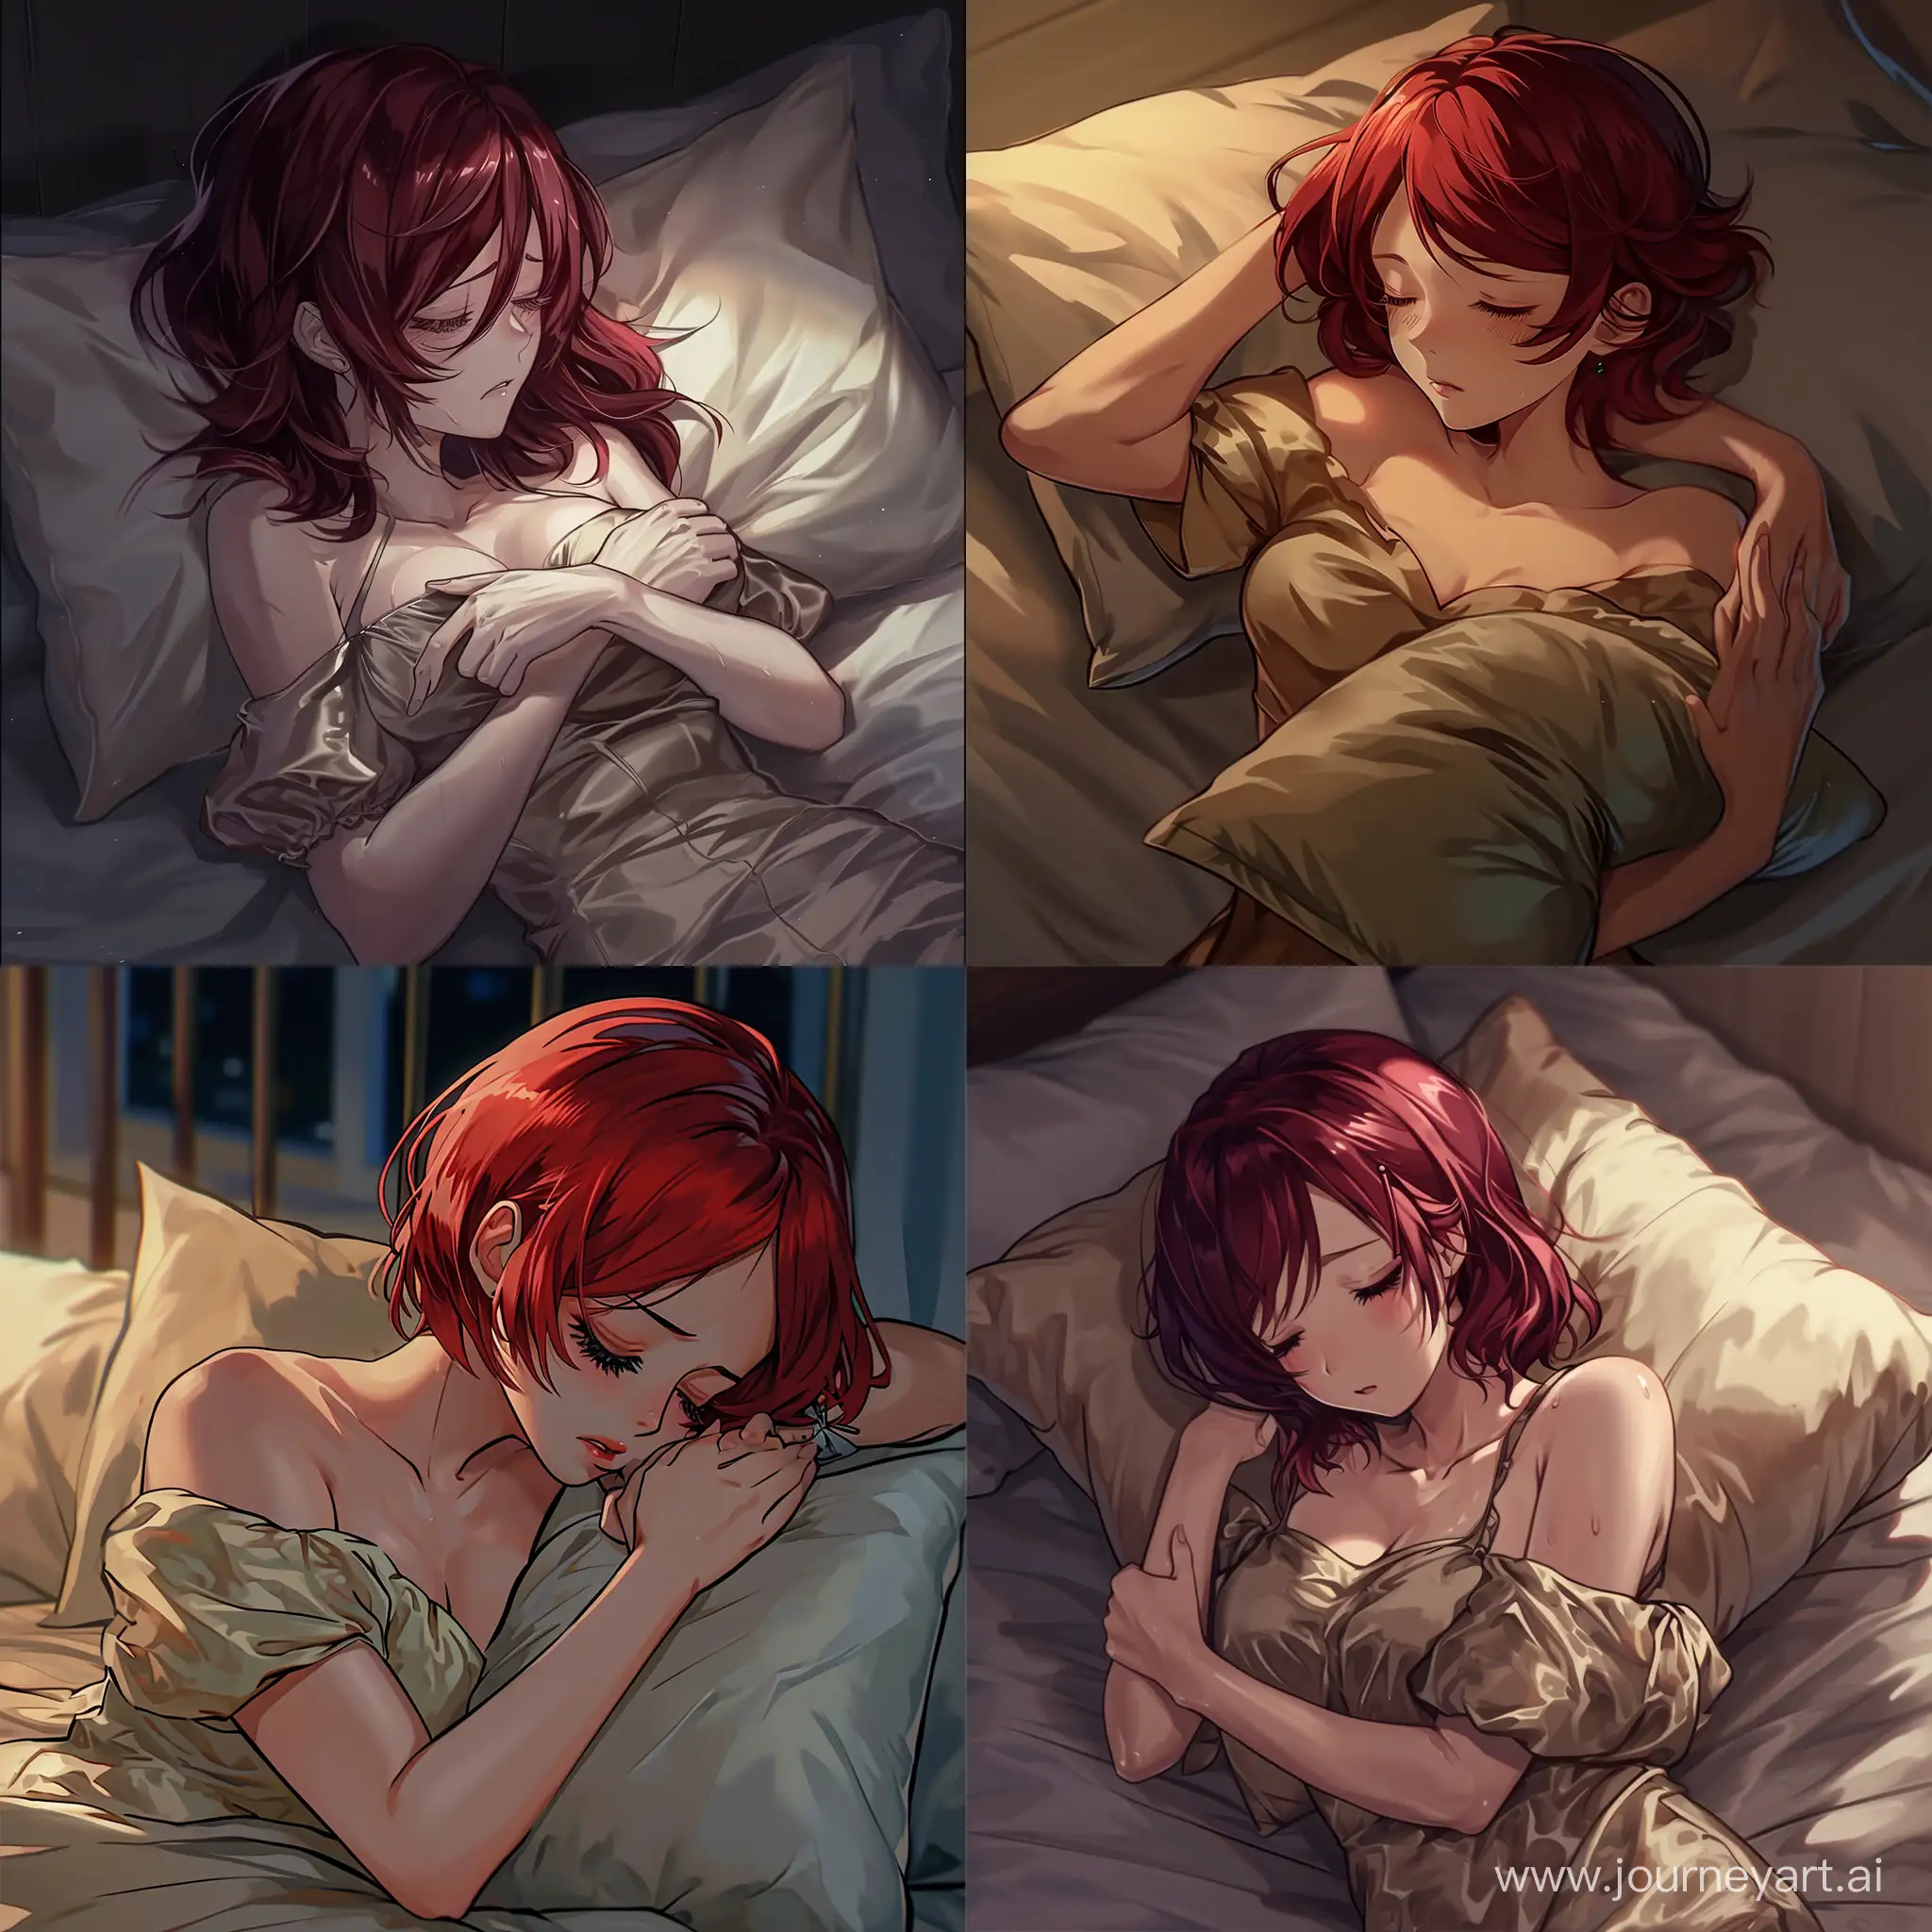 картинка в стиле аниме, девушка 27 лет с рыжими волосами, в шелковой майке с декольте, лежит в кровати ночью, засыпая, она обнимает вторую подушку обеими руками, грустная атмосфера.